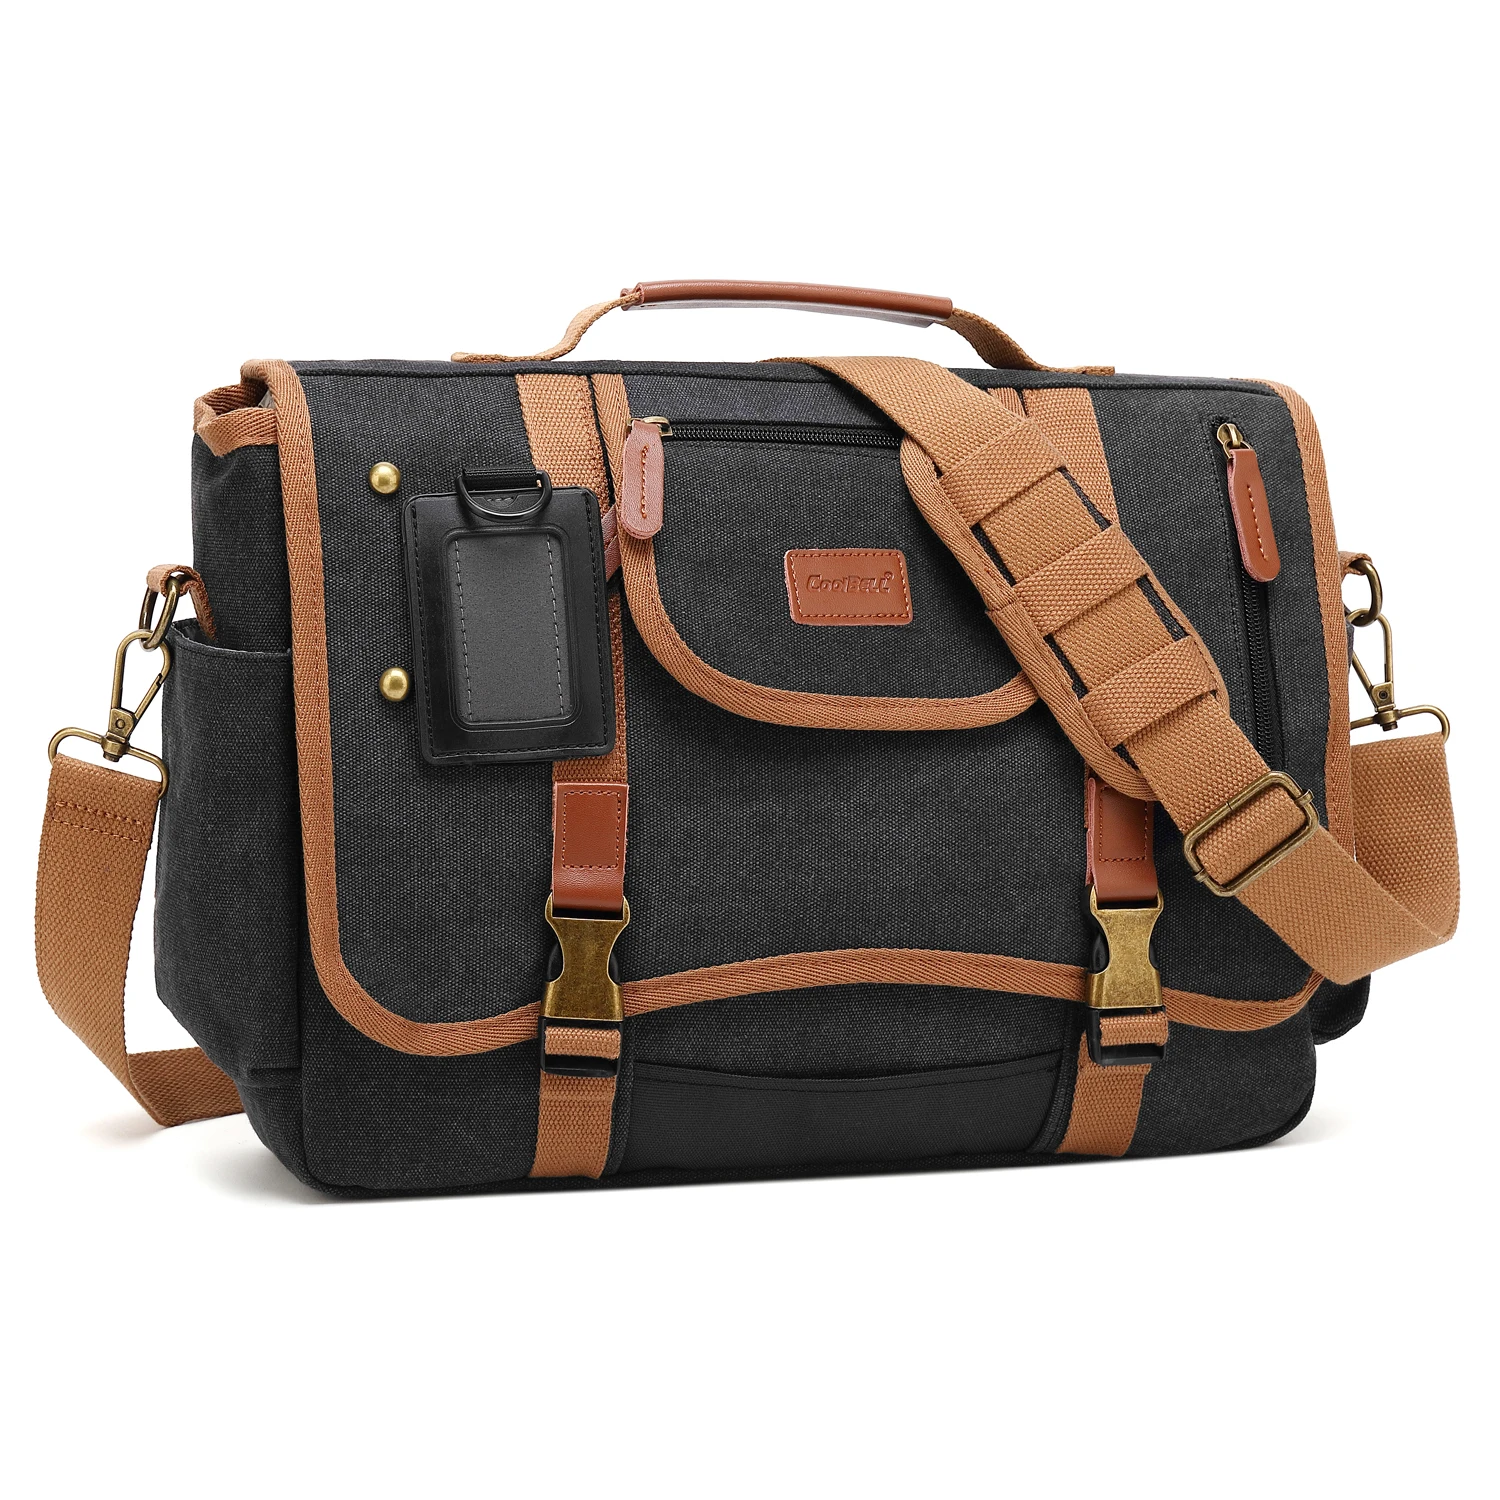 

CoolBELL 15.6 Inch Laptop Shoulder Bag Messenger Bag Case Sport Handbag Business Briefcase Multi-Functional Travel Bag for Men